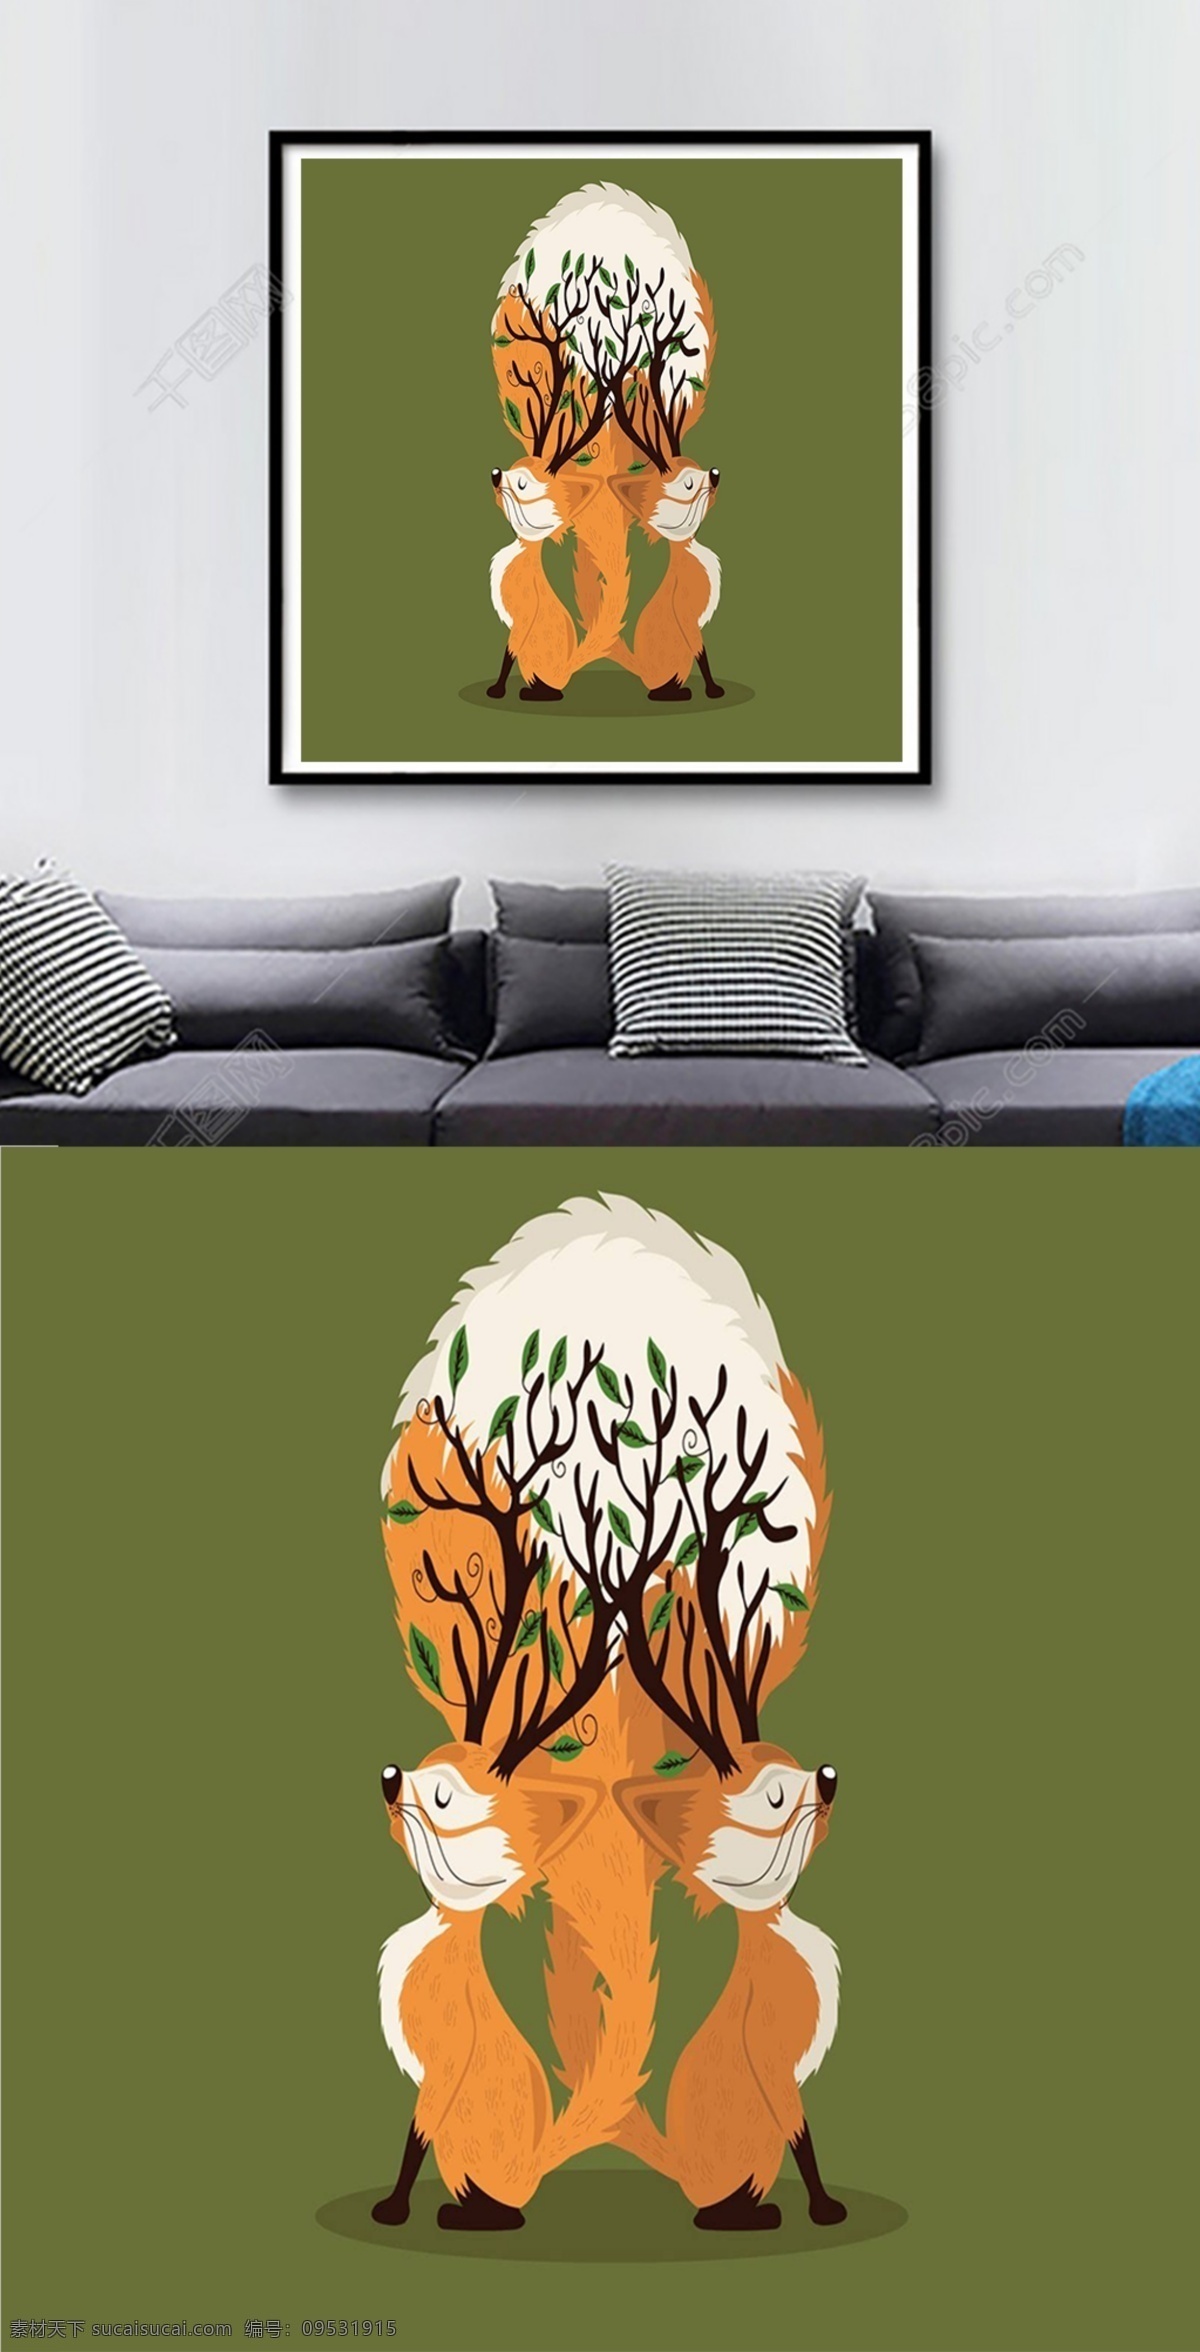 方 图 墨绿 背景 卡通 松鼠 手绘 客厅 装饰画 方图